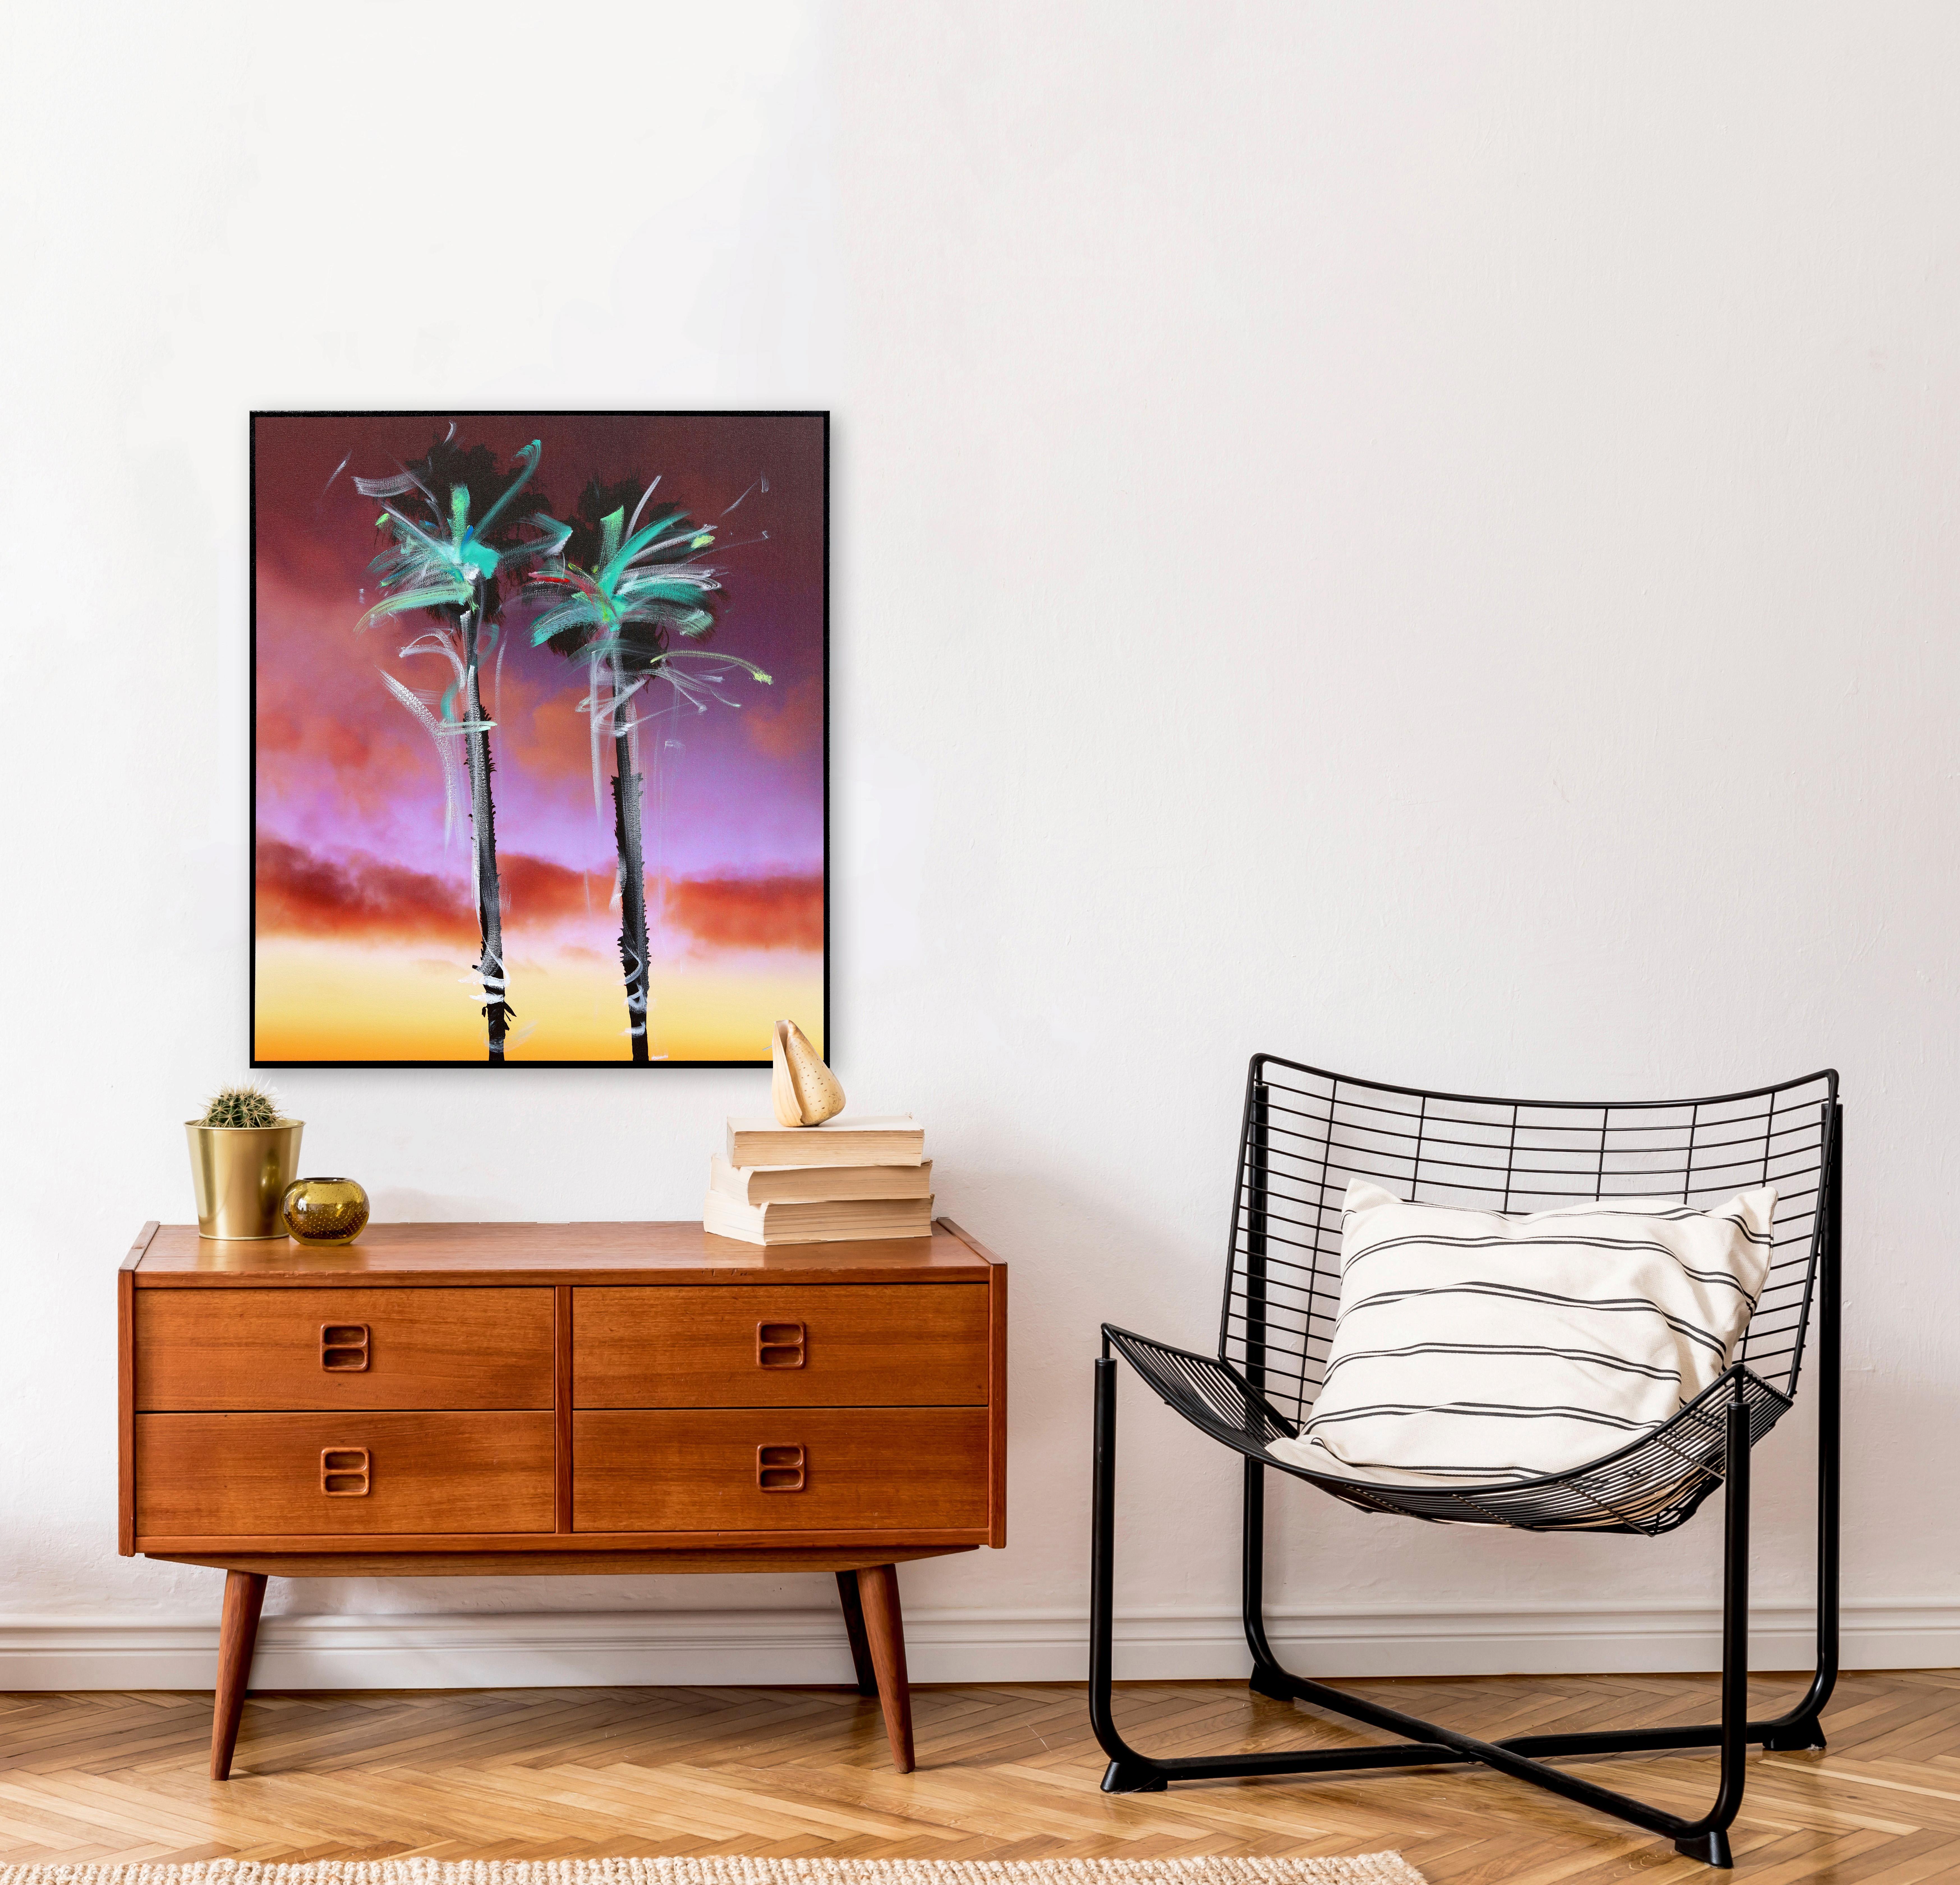 Redondo Palms - Two Way - Painting by Pete Kasprzak